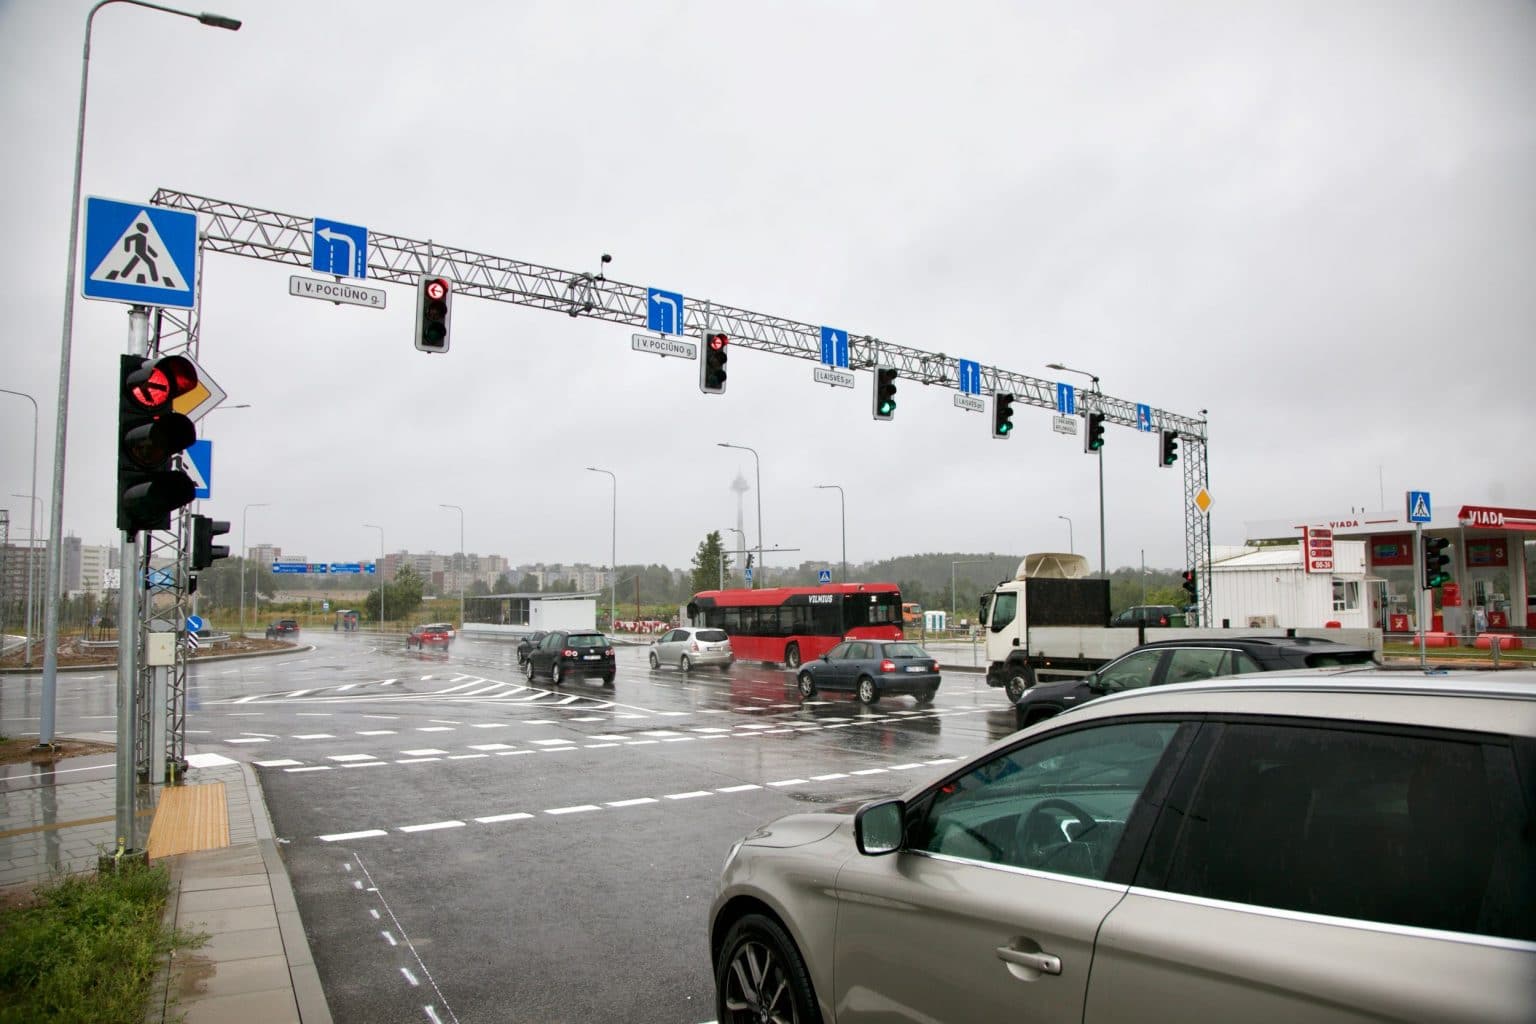 Sostinės Pilaitės rajone – nauja sankryža ir saugesnis eismo organizavimas